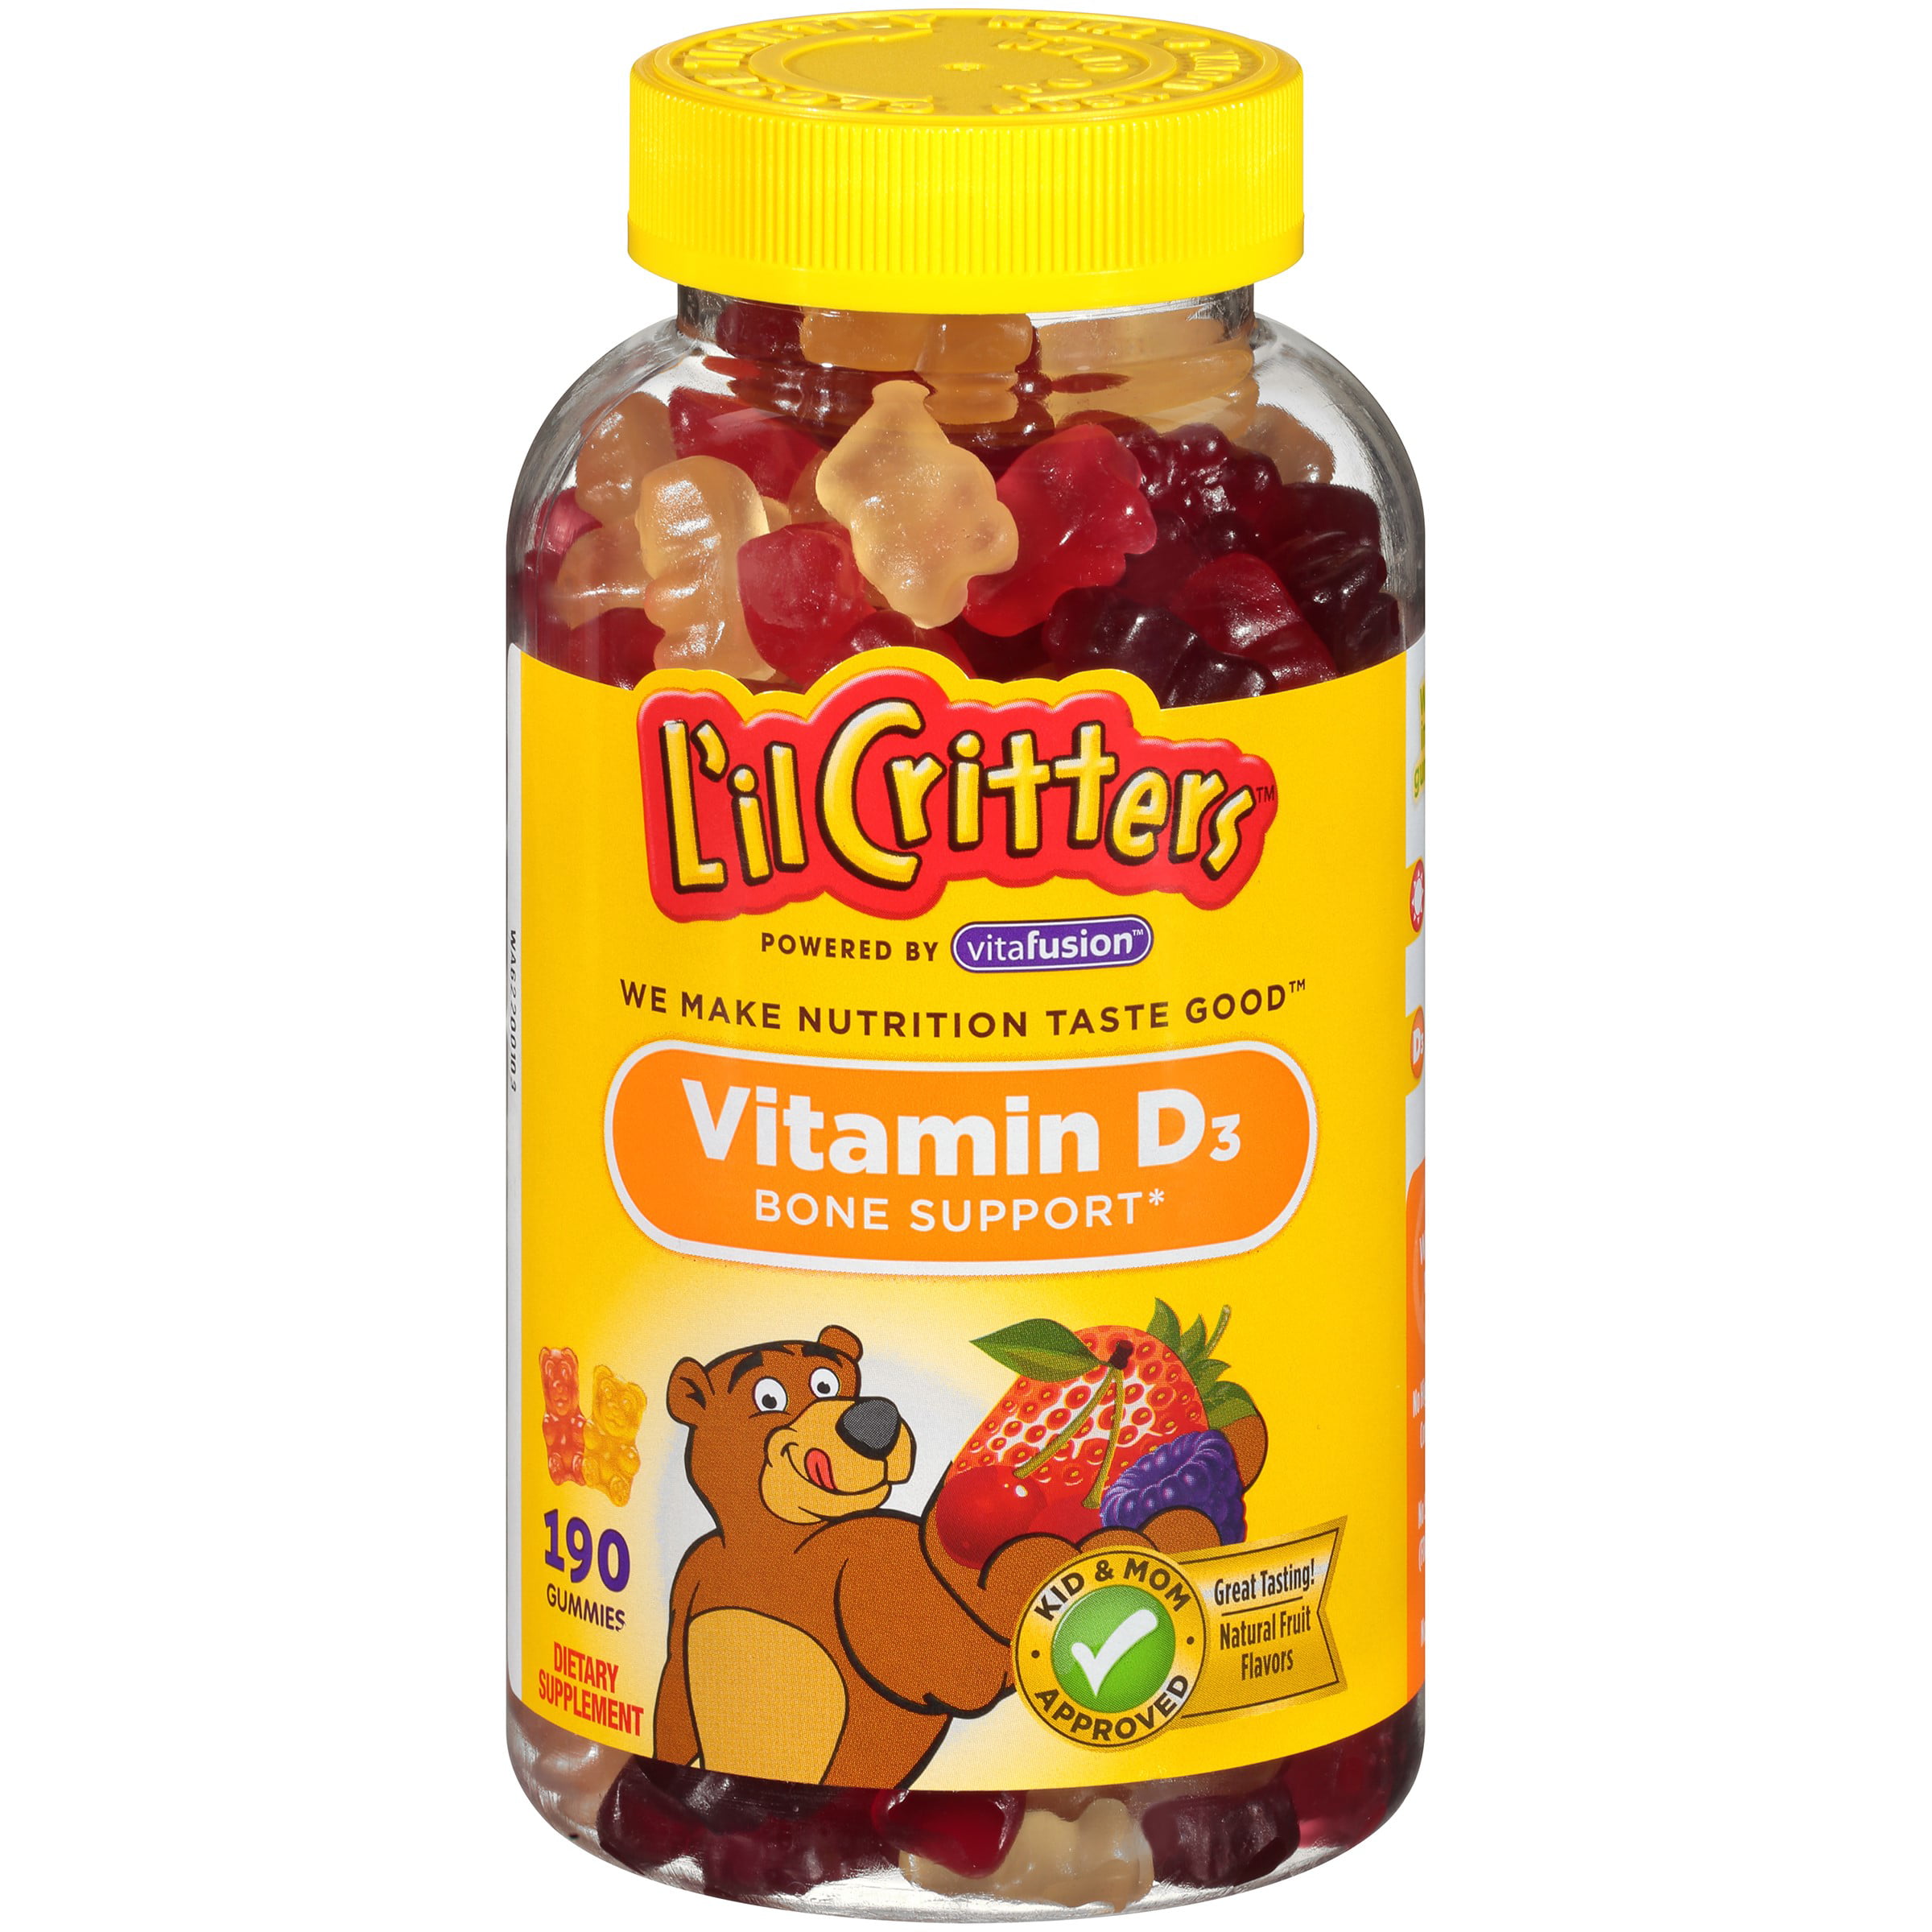 l-il-critters-vitamin-d3-gummy-bears-bone-support-190-ct-walmart